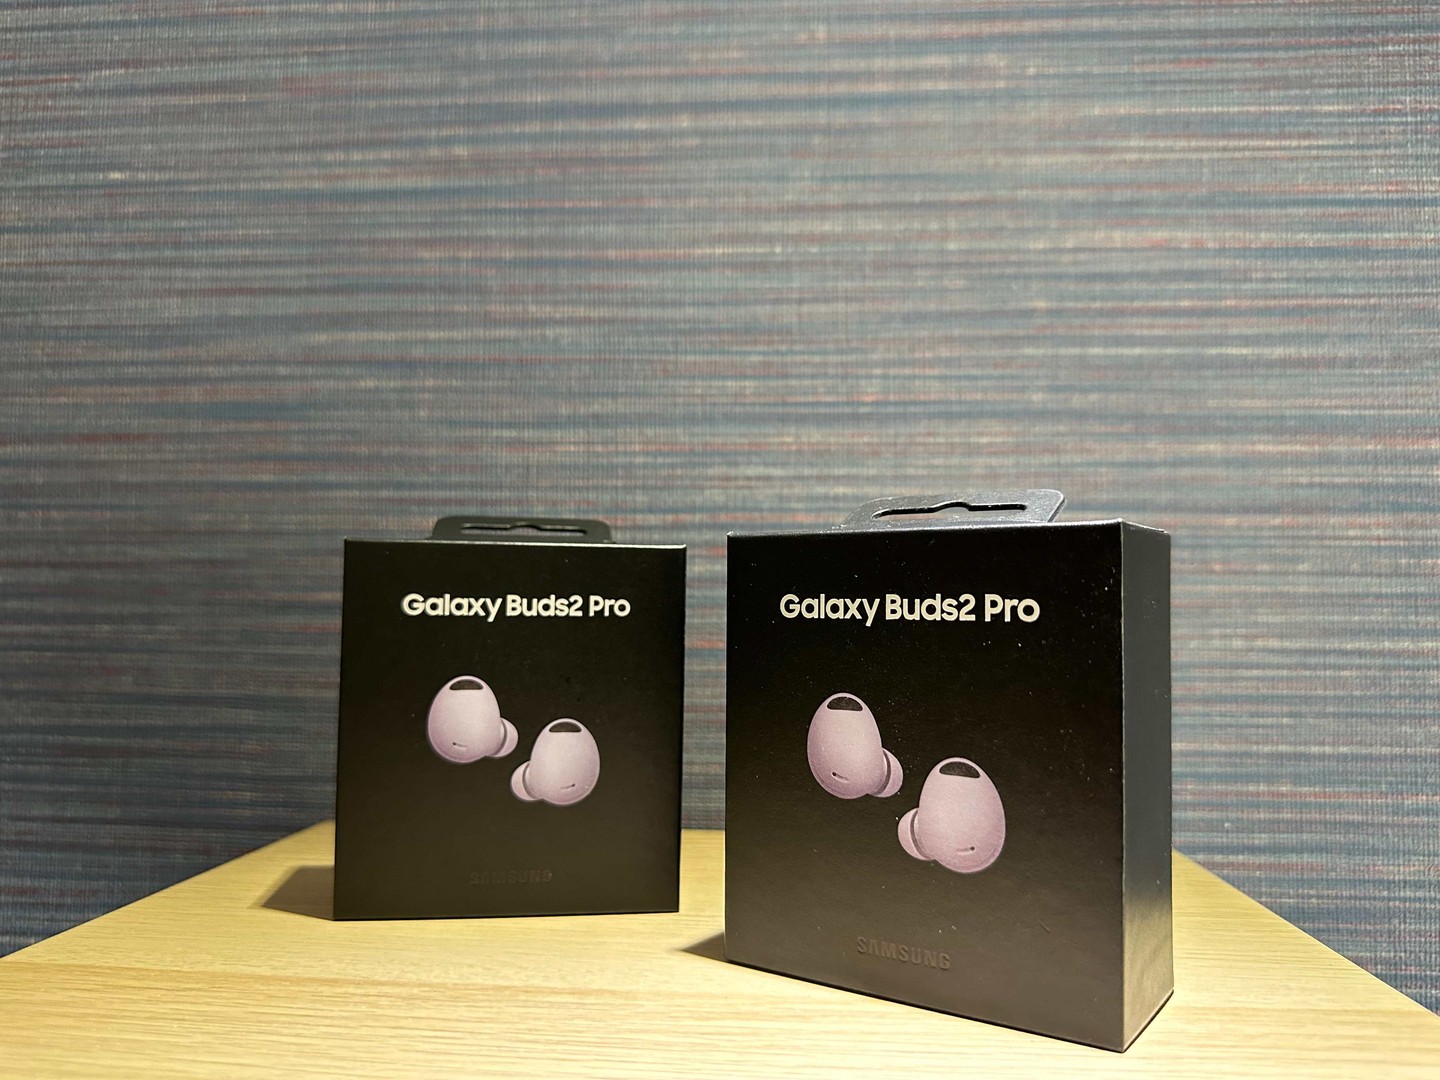 accesorios para electronica - Vendo Samsung Galaxy Buds2 Pro Purple Nuevos | Originales RD$ 10,800 NEG
 0